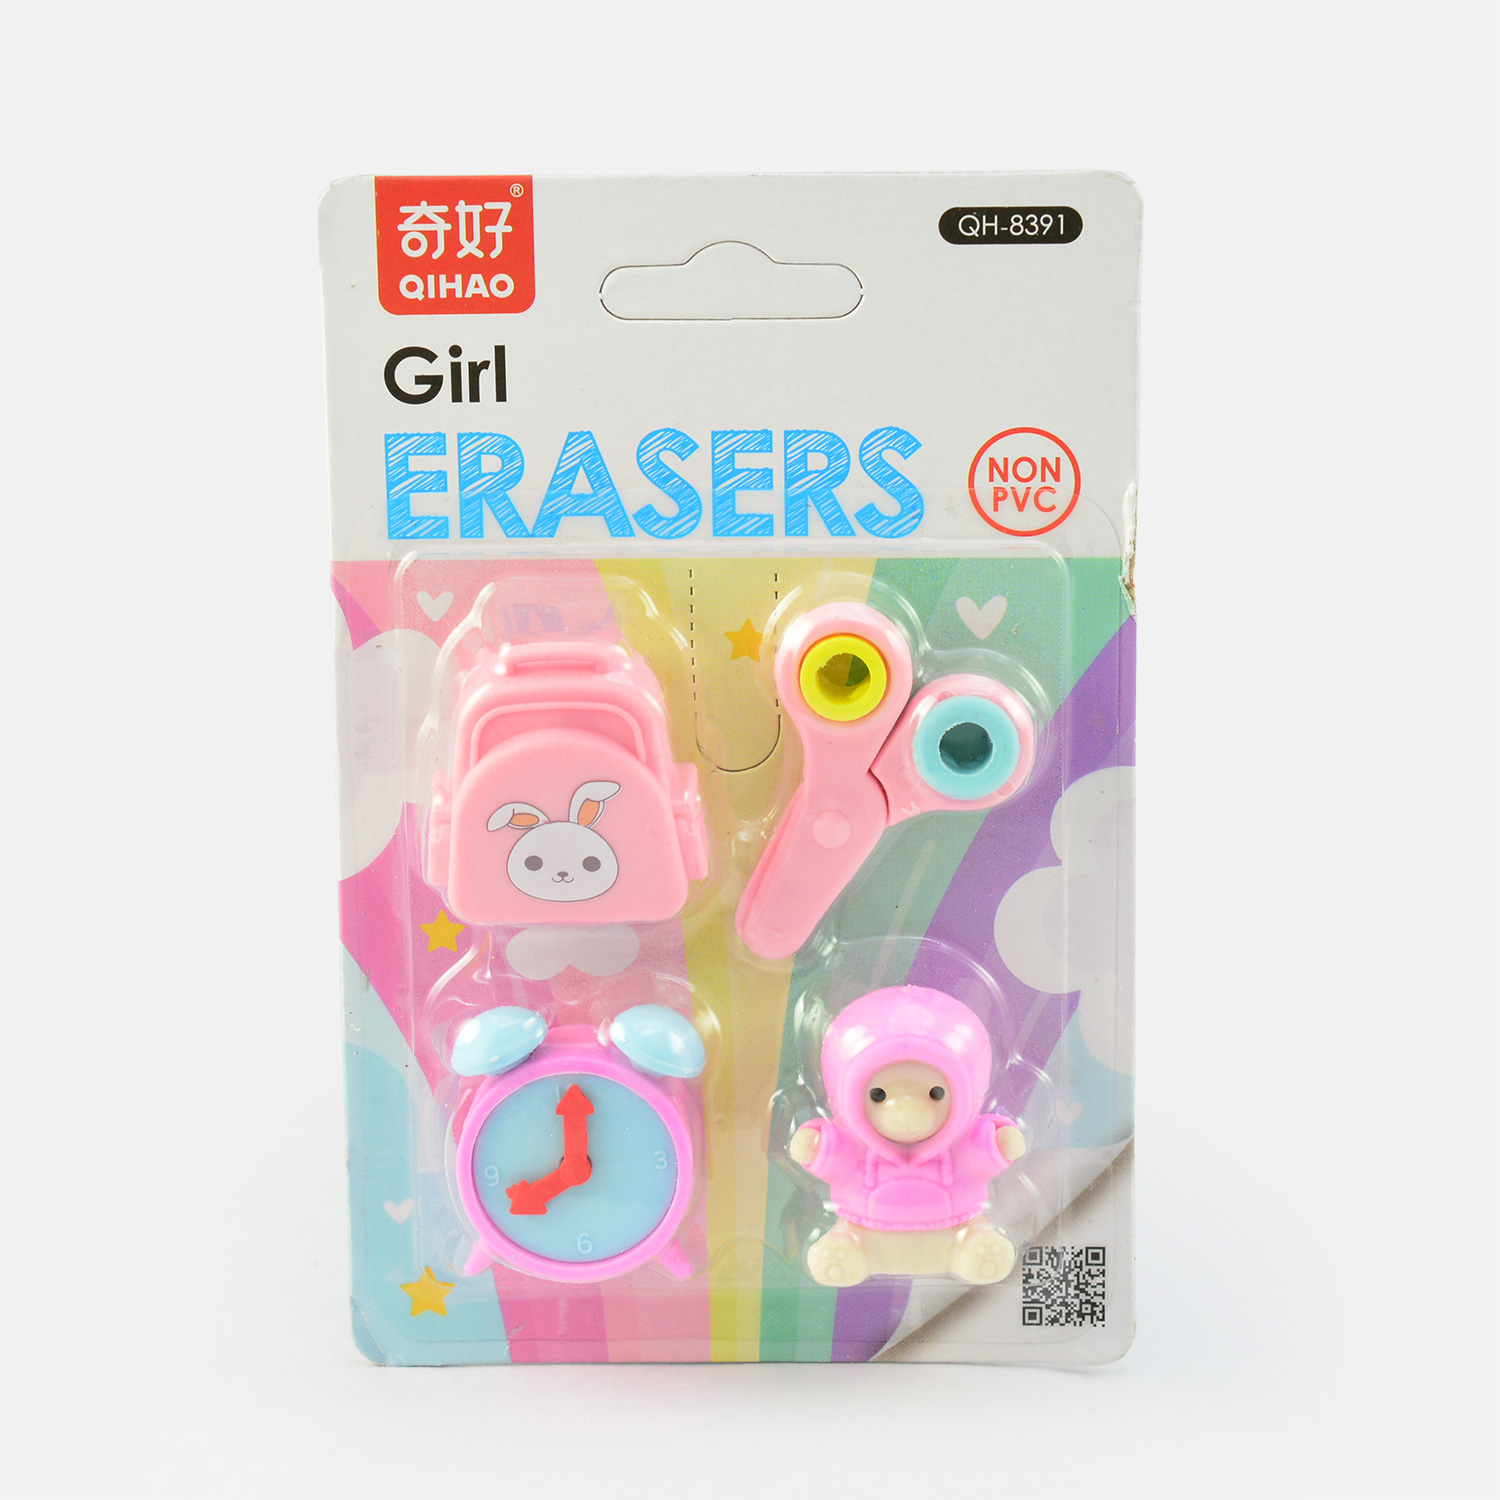 Different Style Girls Eraser Kit Set Non PVC Built